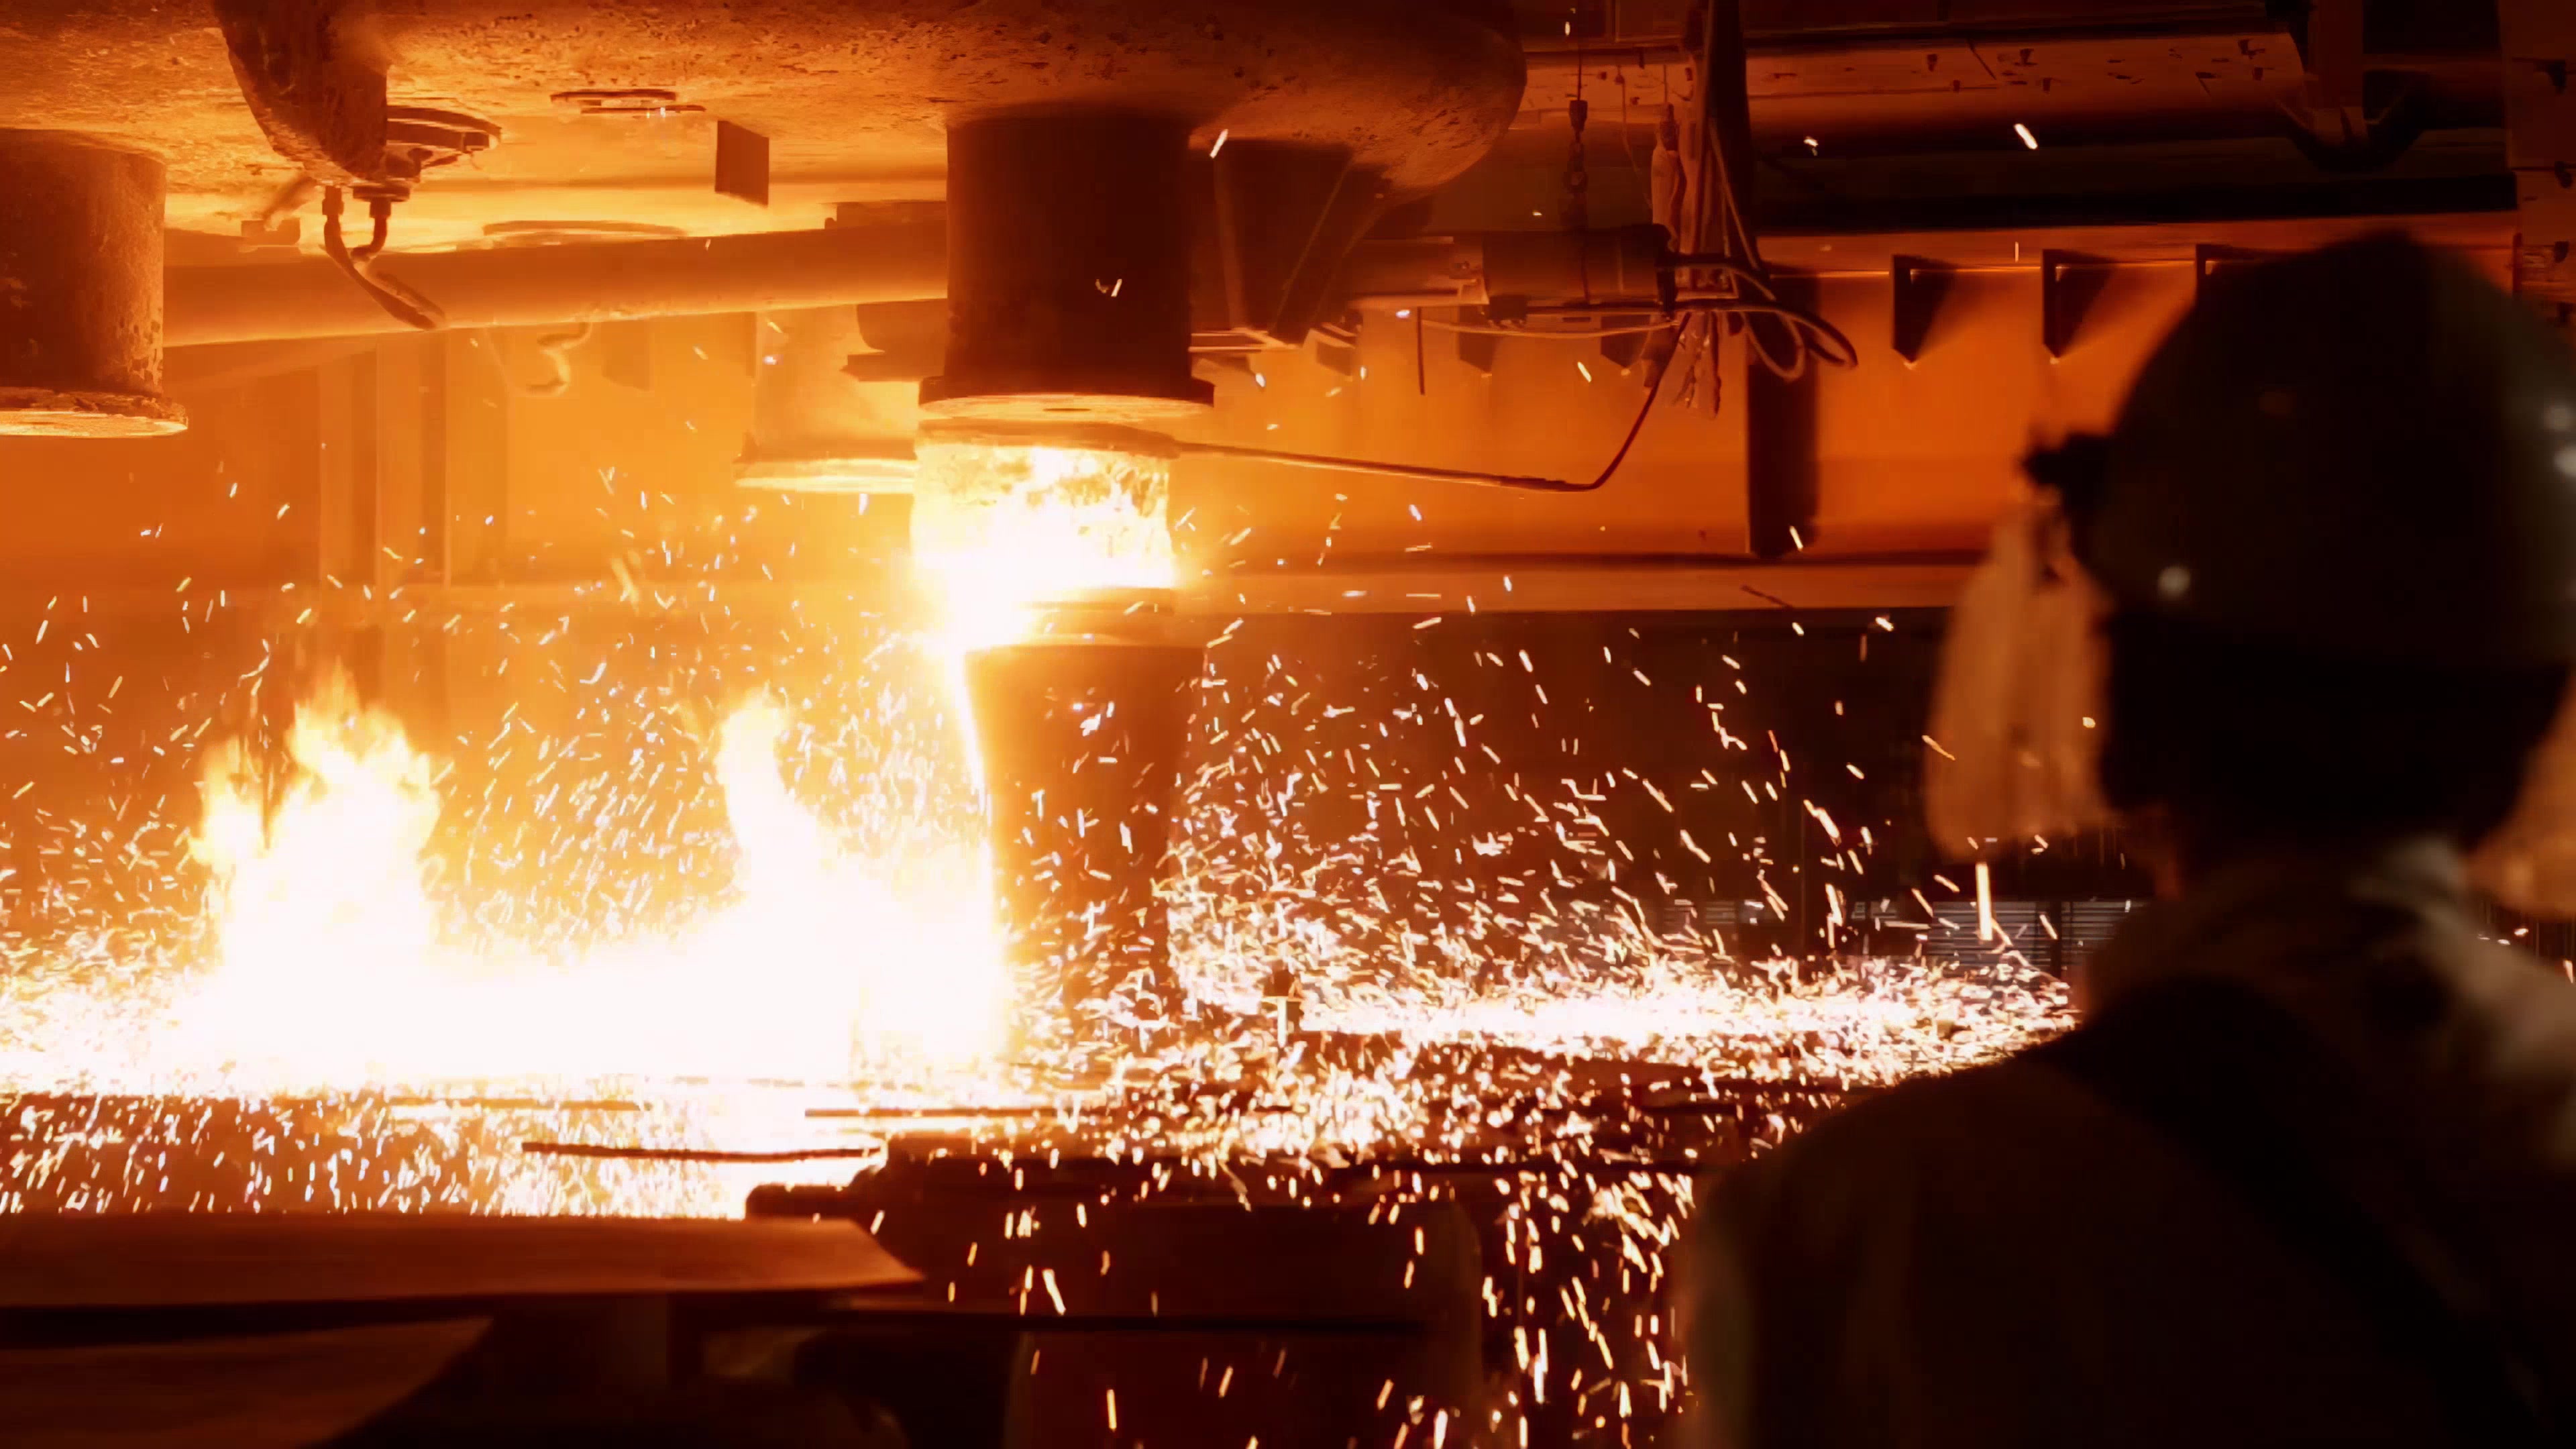 山钢济钢钢铁产线全线安全停产—中国钢铁新闻网